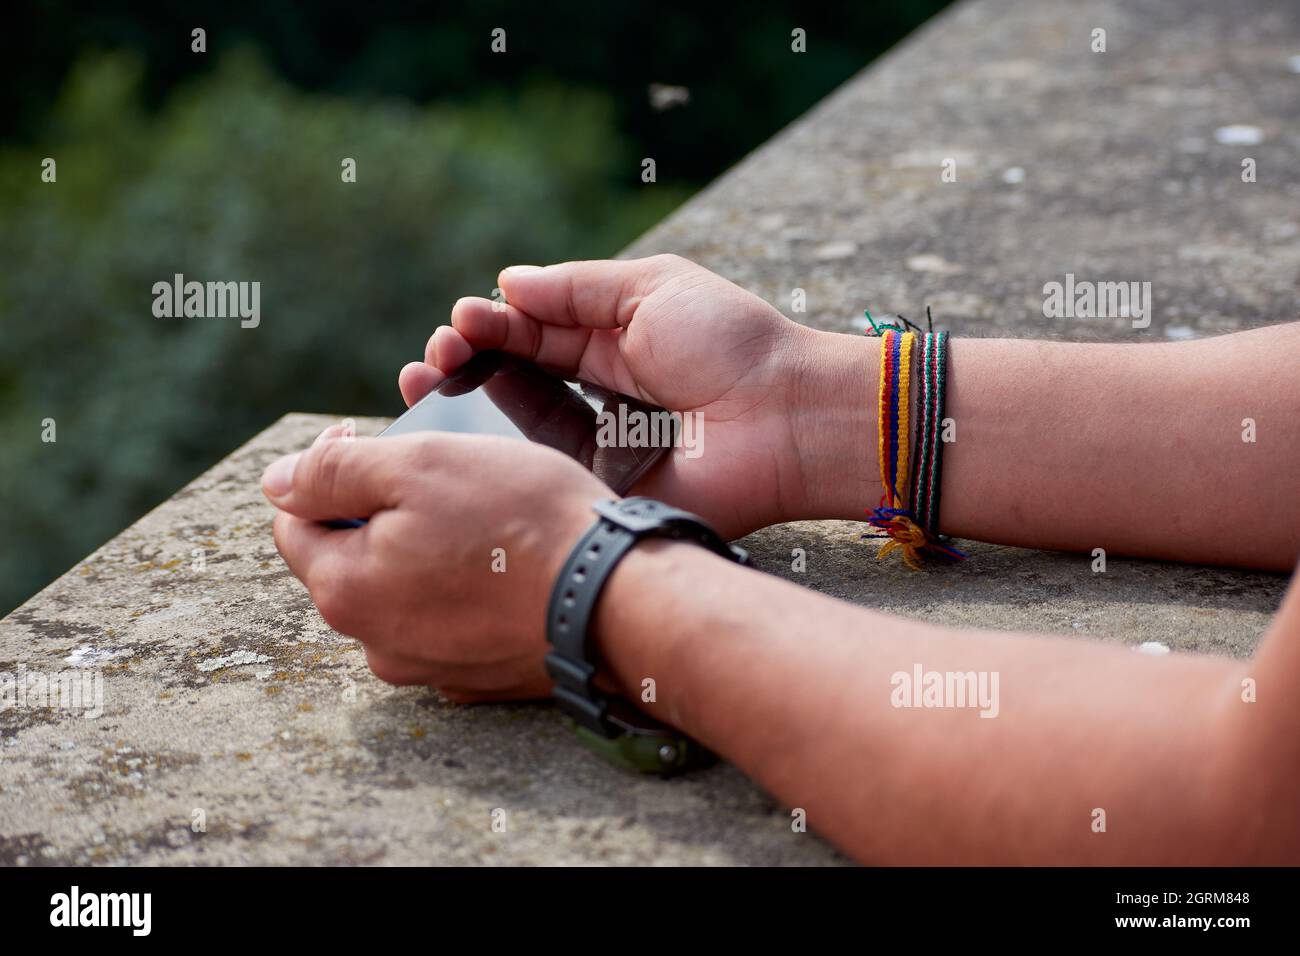 Les mains des hommes portant une montre et des bracelets tenant un smartphone appuyé sur une structure en pierre Banque D'Images